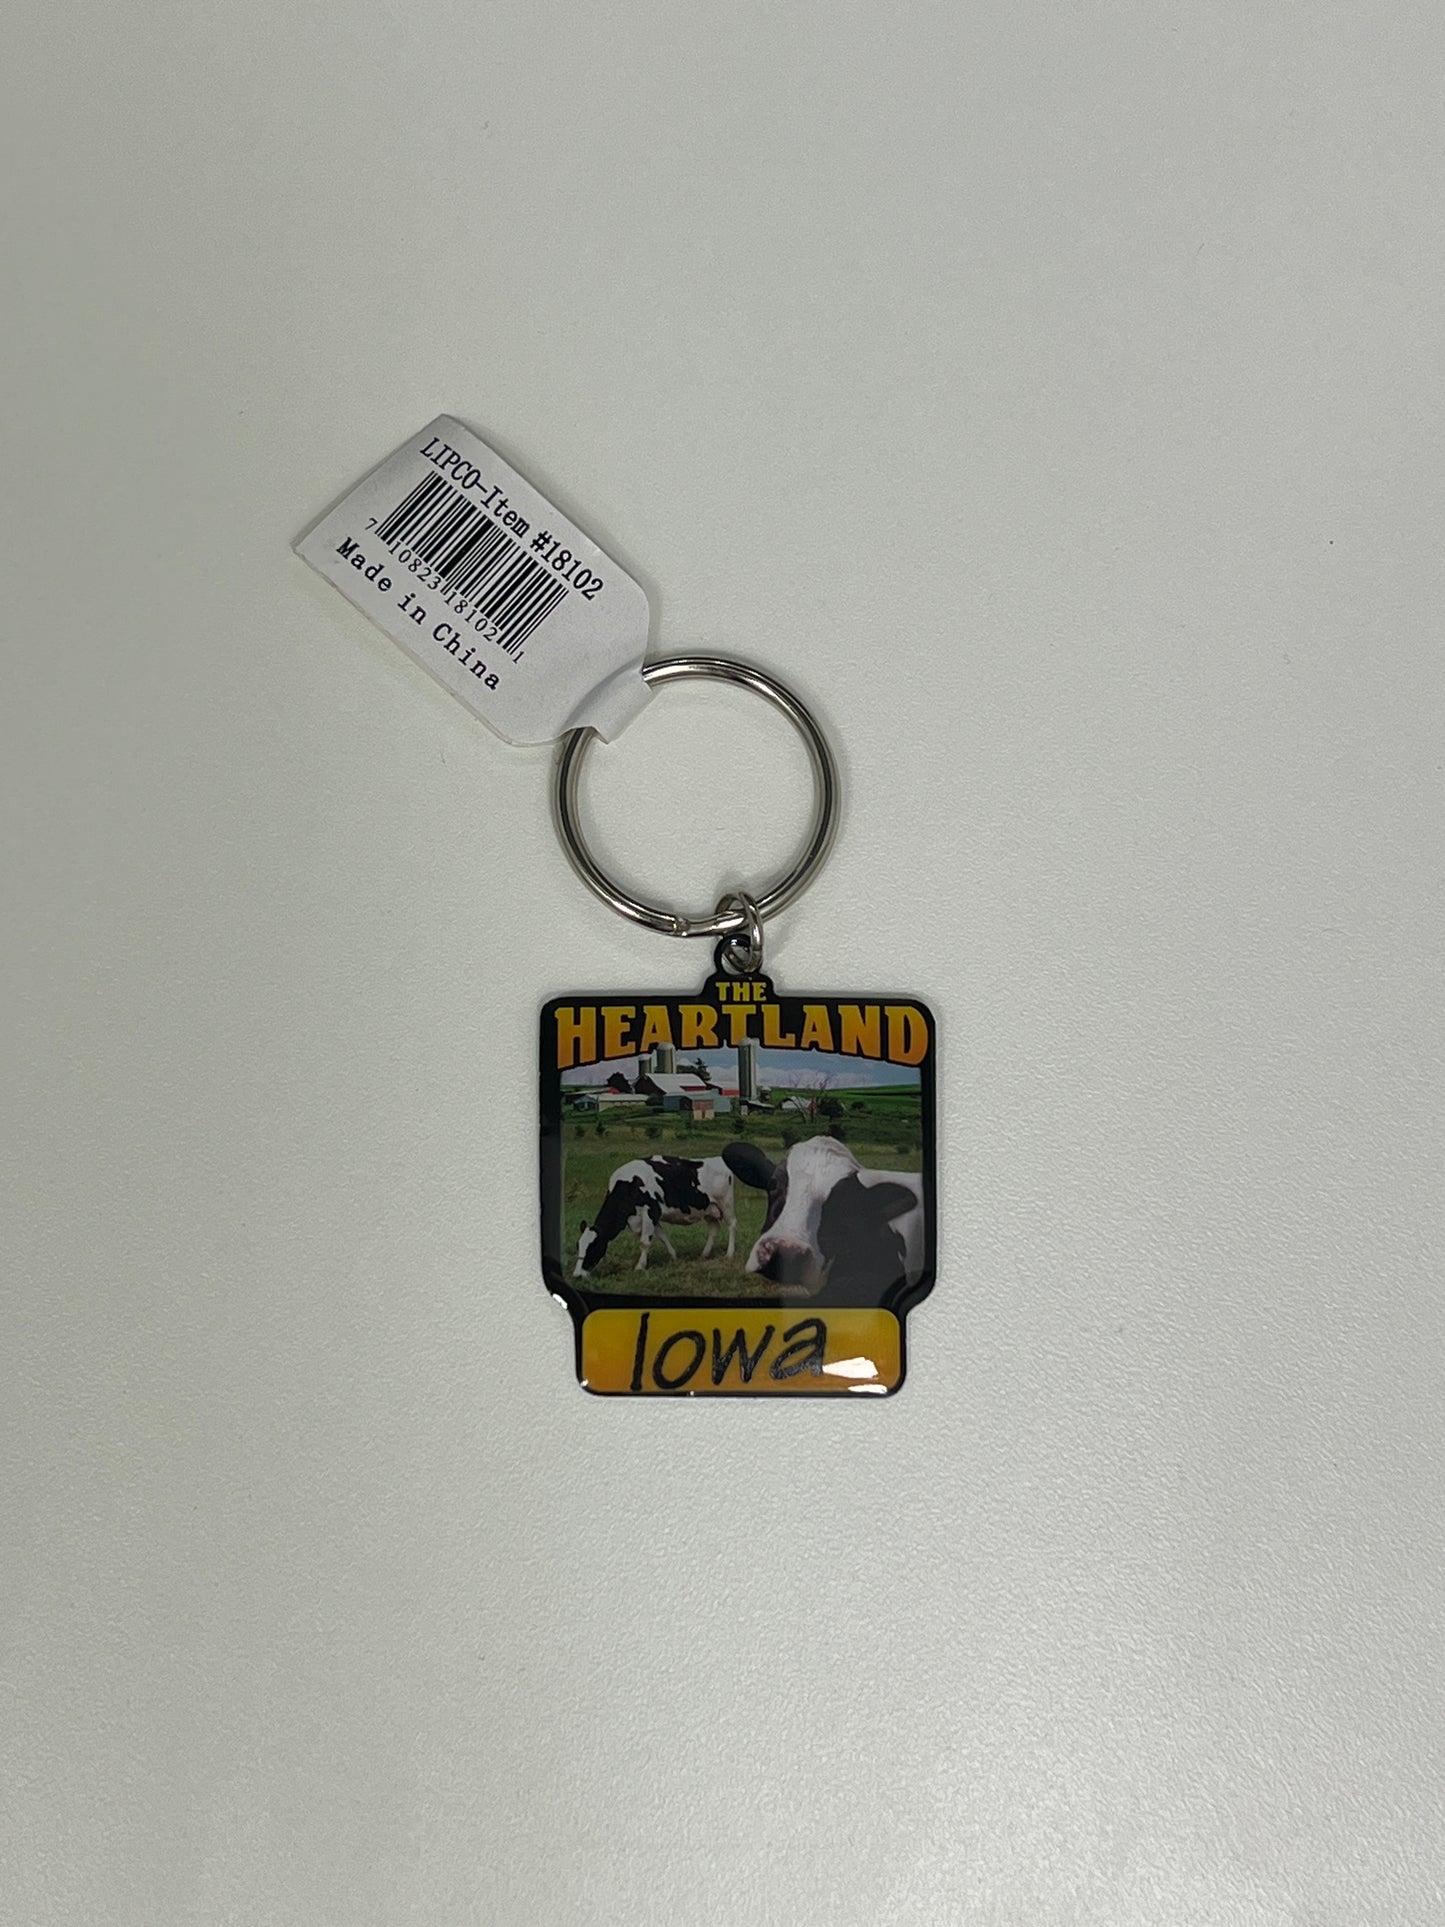 The Heartland Iowa Keychain